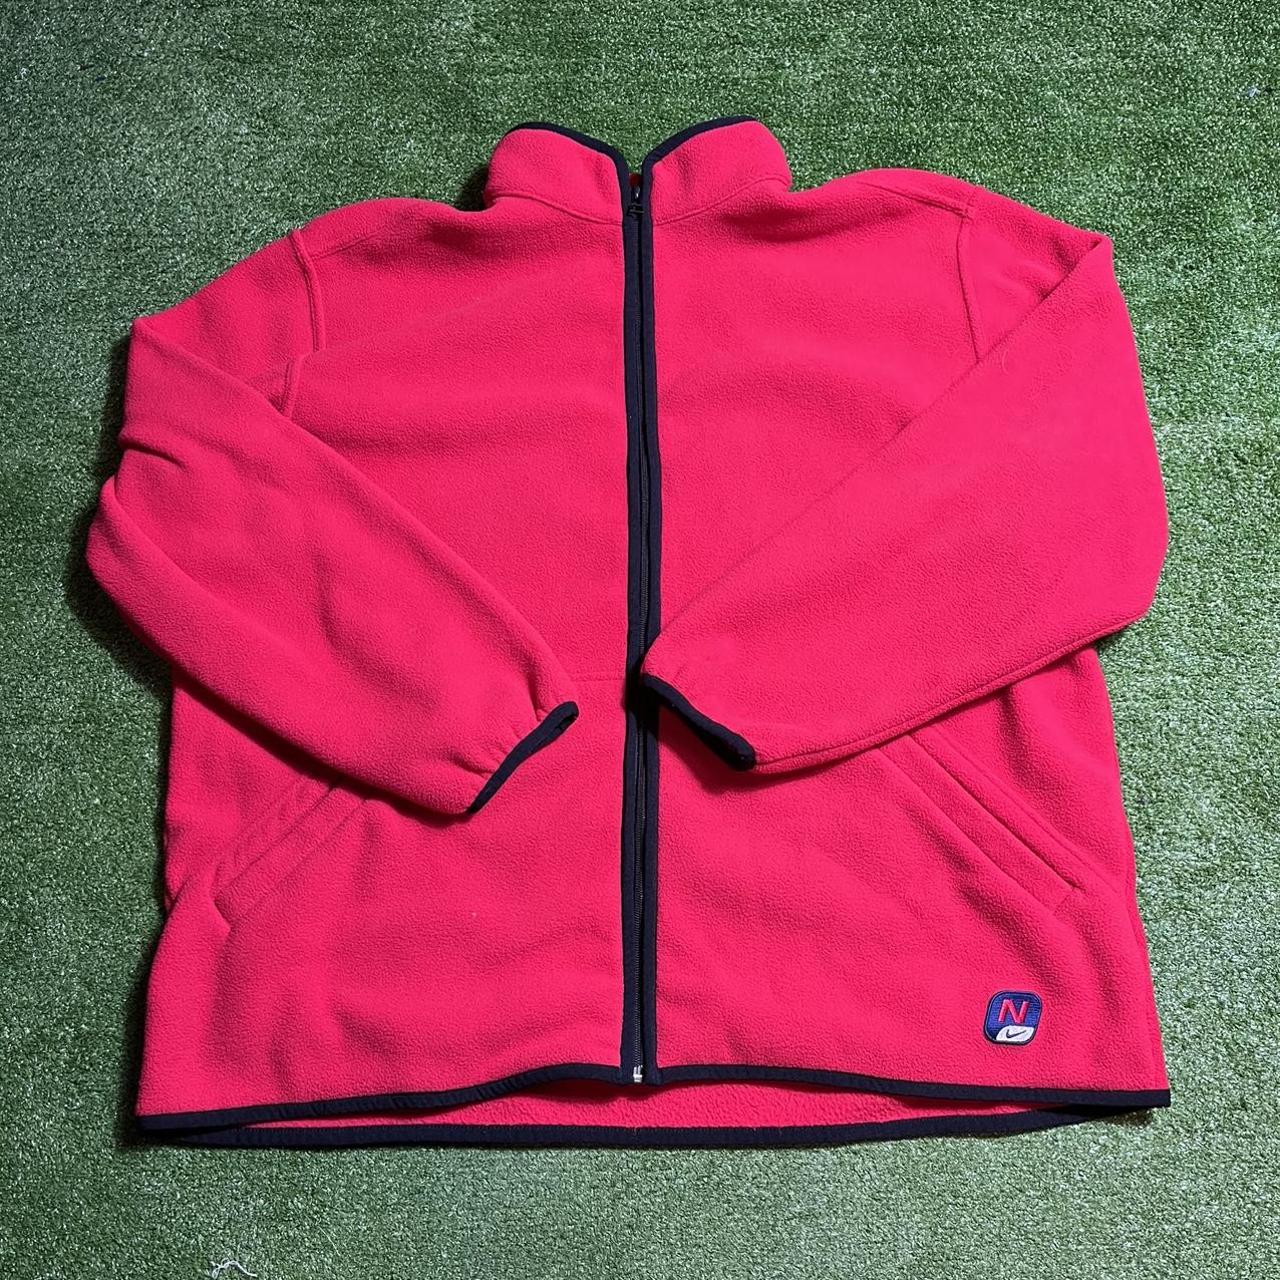 Nike fleece jacket Y2K red in good conditom size XL.... - Depop